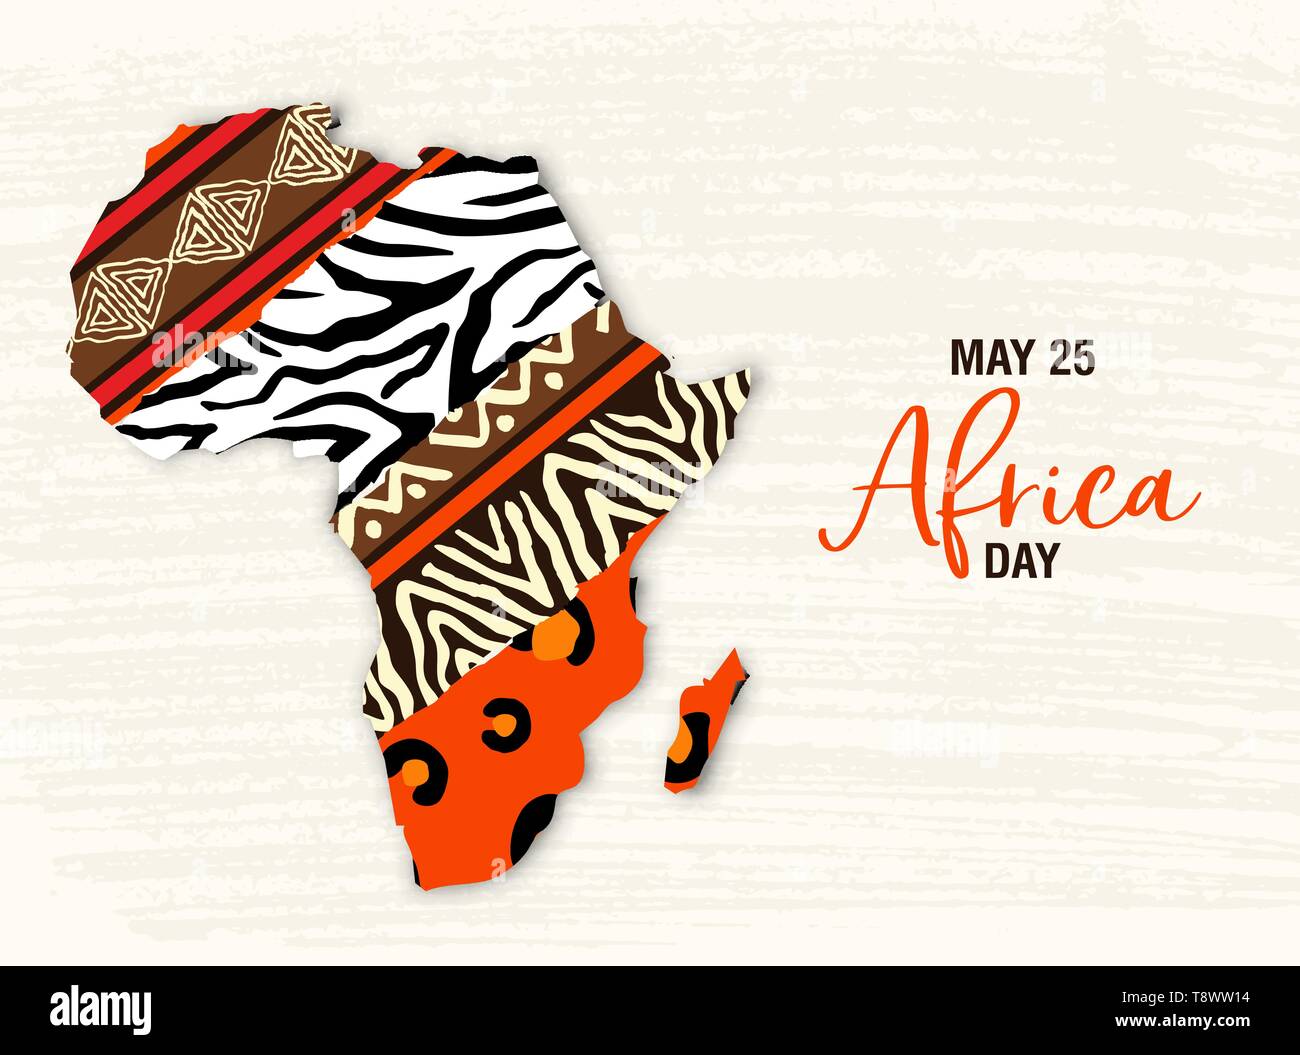 Afrika Tag Grußkarte Abbildung für 25 feiern können. Afrikanischen Kontinent Karte mit ethnische Kunst und Wild animal print Texturen. Stock Vektor